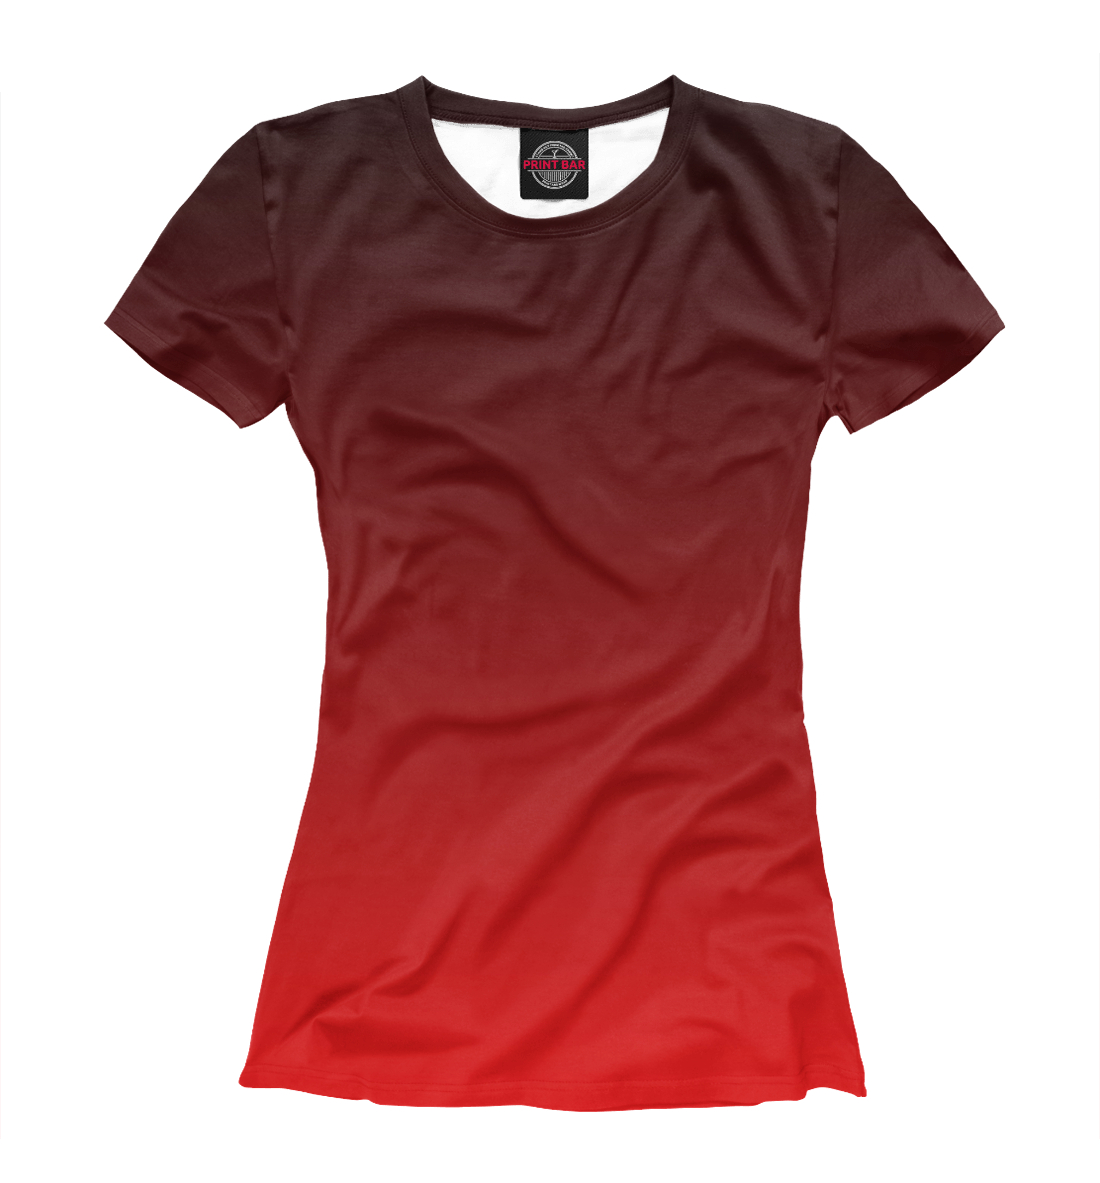 Футболка Градиент Красный в Черный для женщин, артикул: CLR-933713-fut-1mp